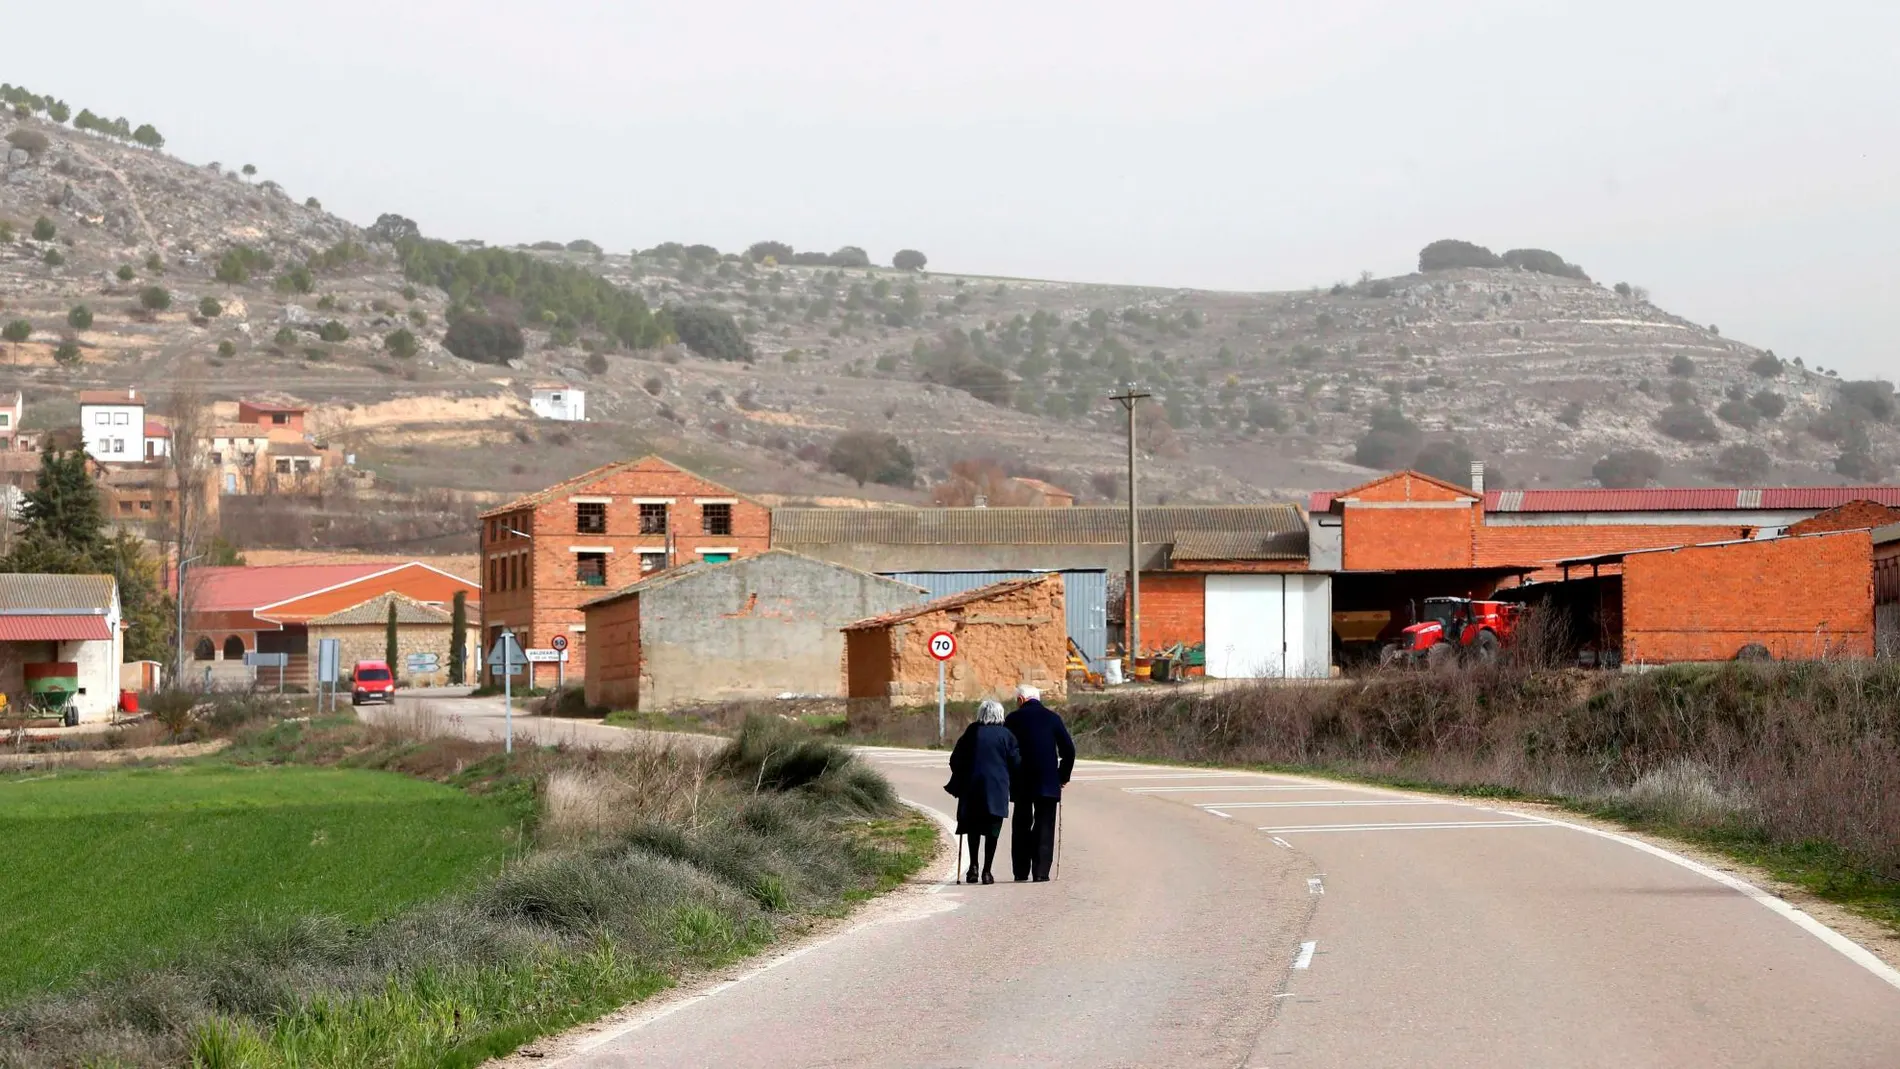 Ver los pueblos vacíos es la estampa habitual del medio rural de la Comunidad. En la imagen, una pareja de personas mayores pasean por la carretera de Valdearcos de la Vega, en la provincia de Valladolid